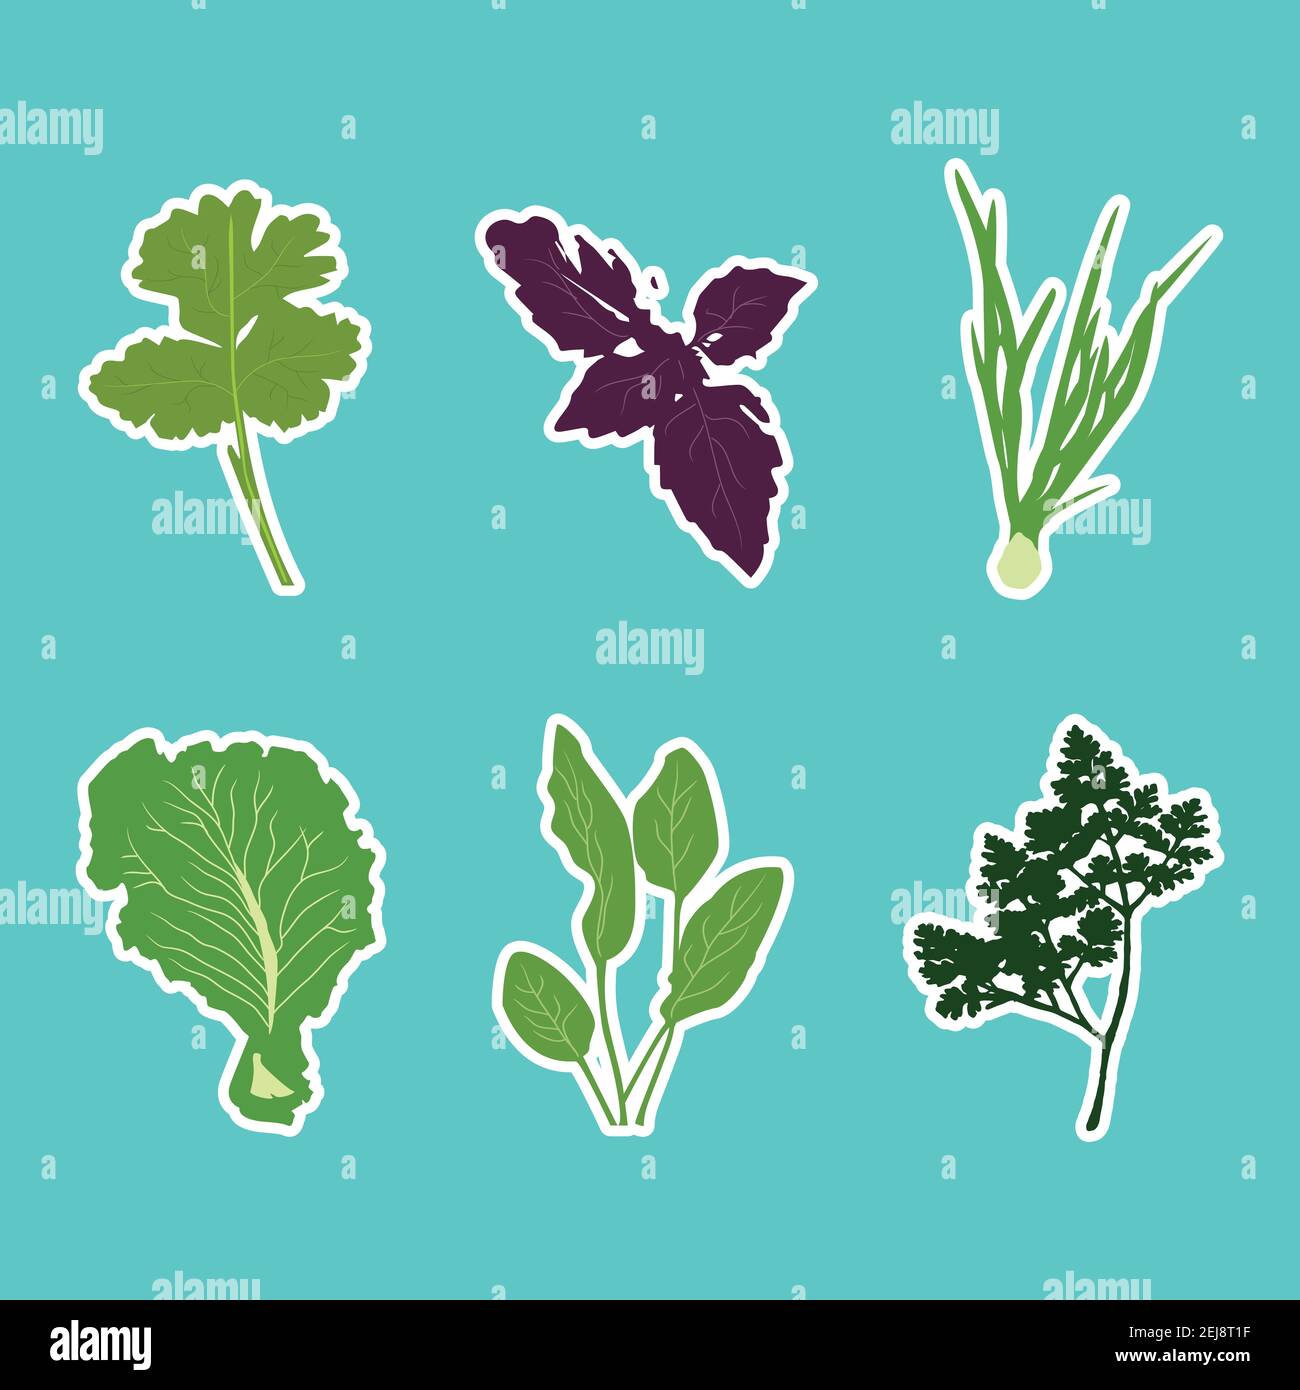 Vektor-Set von flachen Cartoon Gemüse Aufkleber. Vektorhintergrund. Flaches Symbol. Vegetarischer Aufkleber. Aufkleber für gesunde Lebensmittel. Stock Vektor